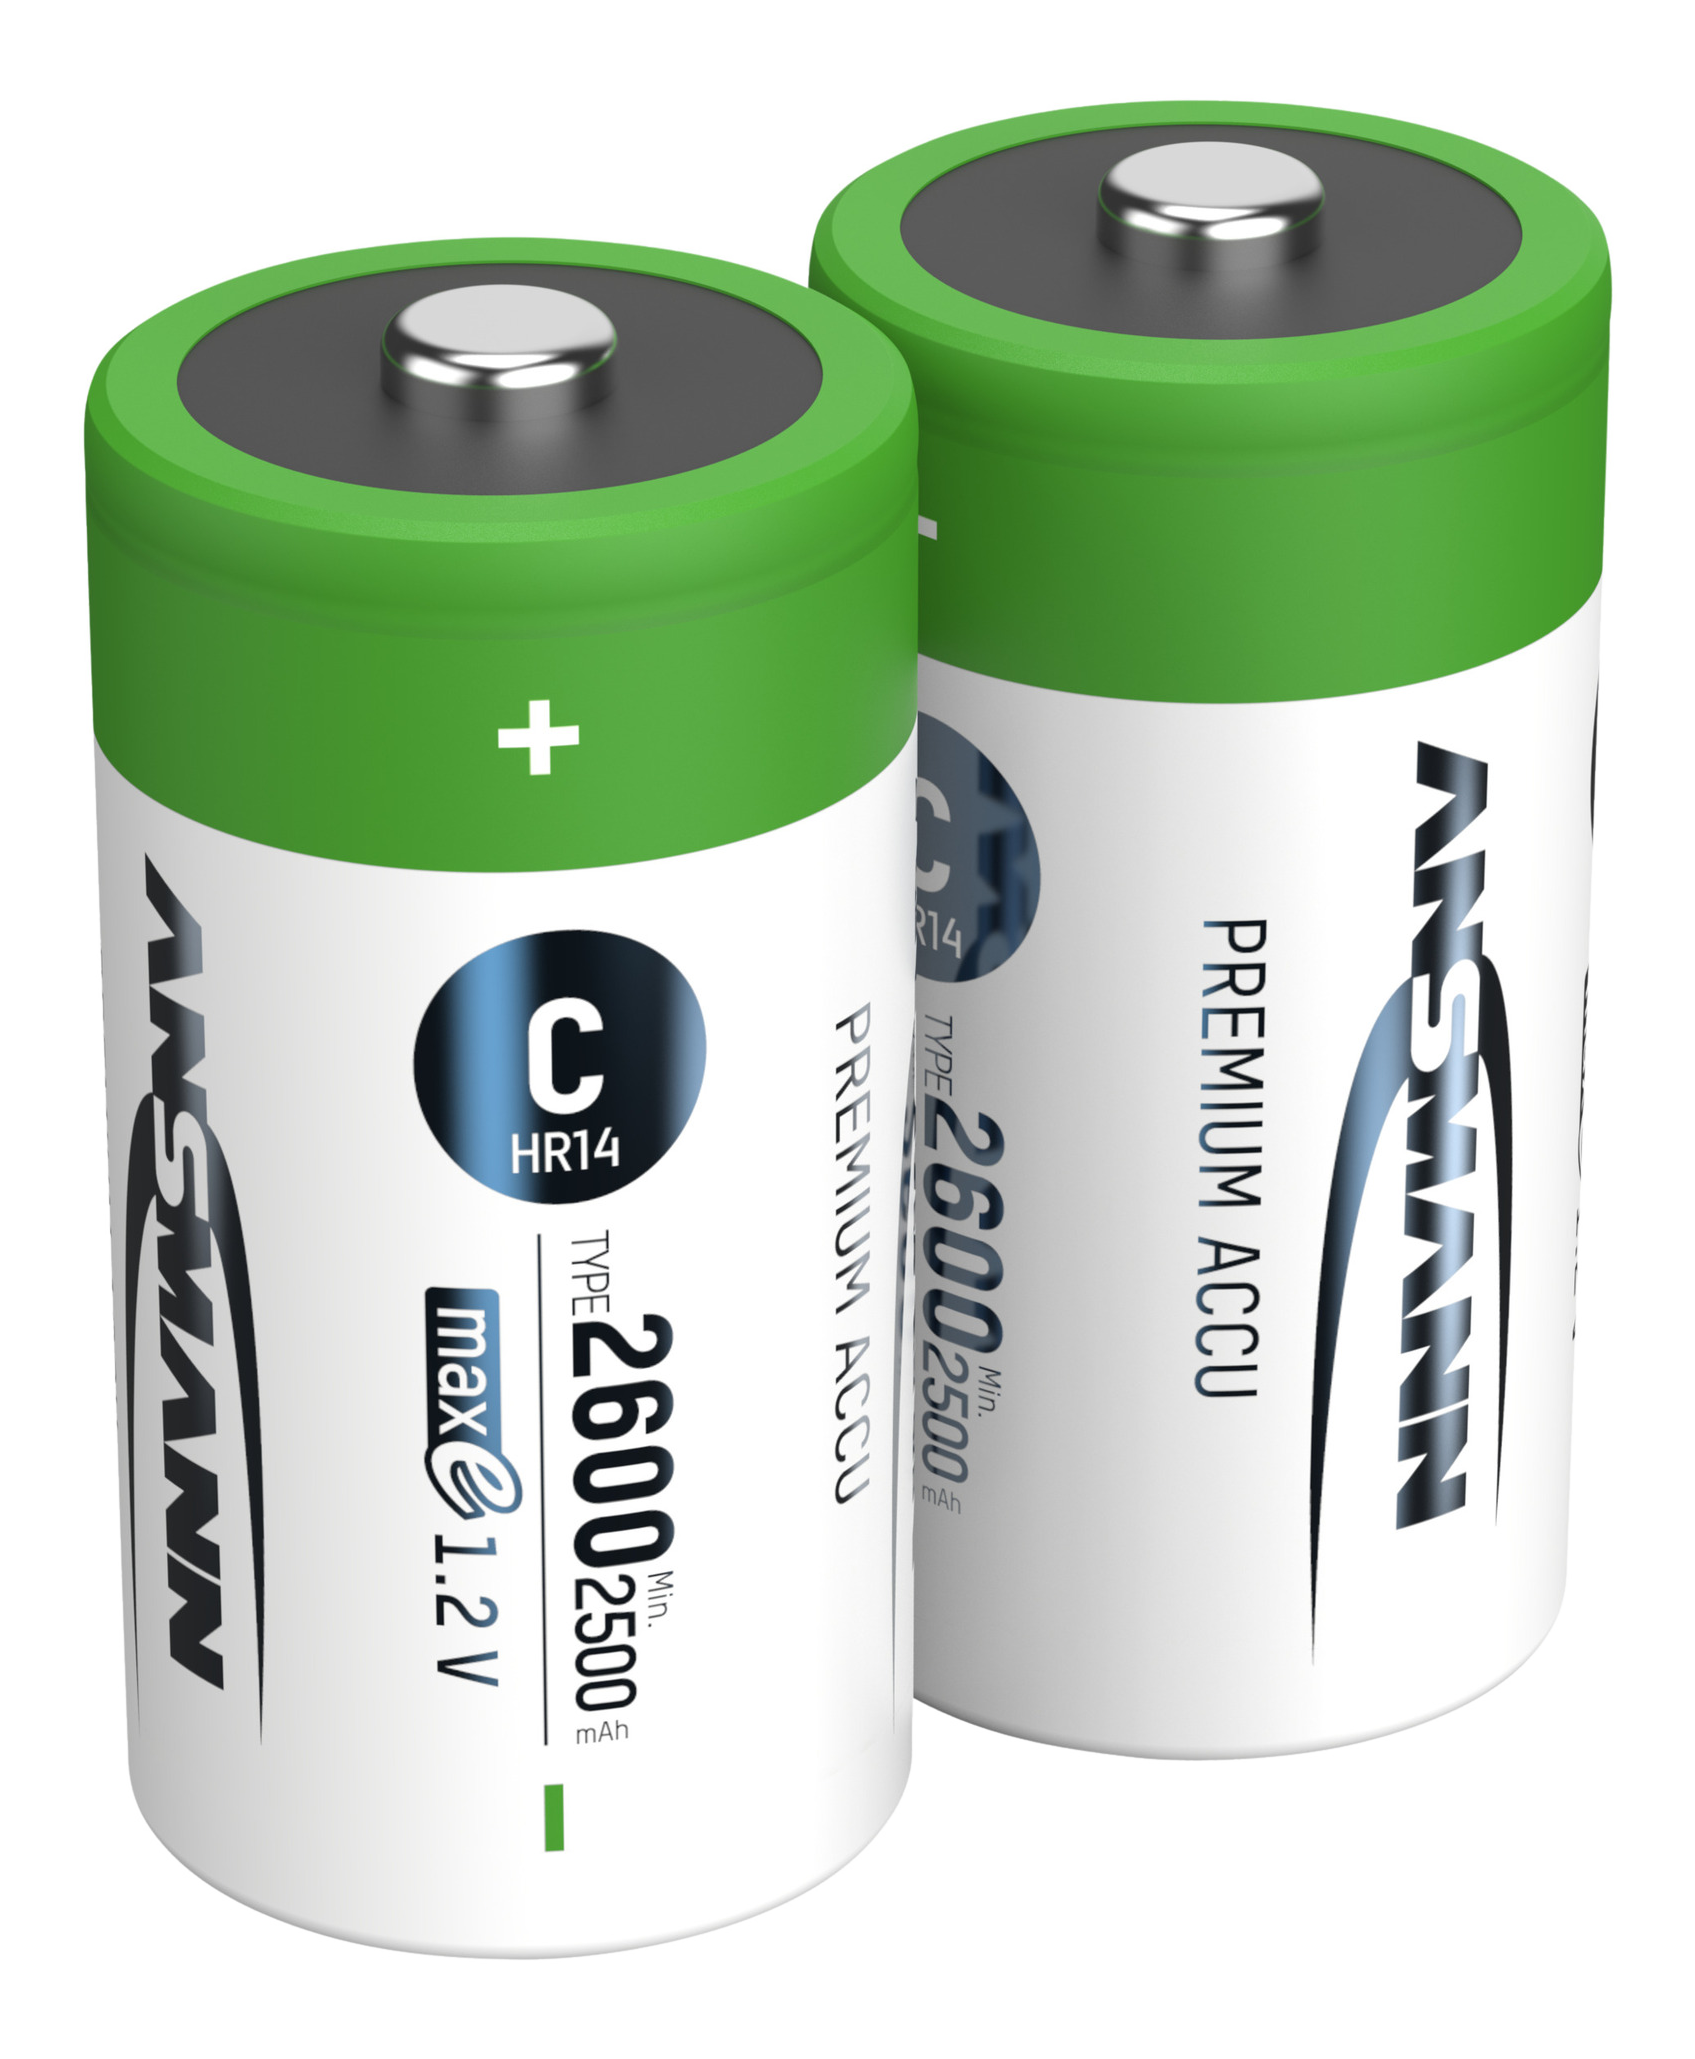 ANSMANN 2 batterie Ni-MH Baby C da 2500 mAh - Batteria ricaricabile